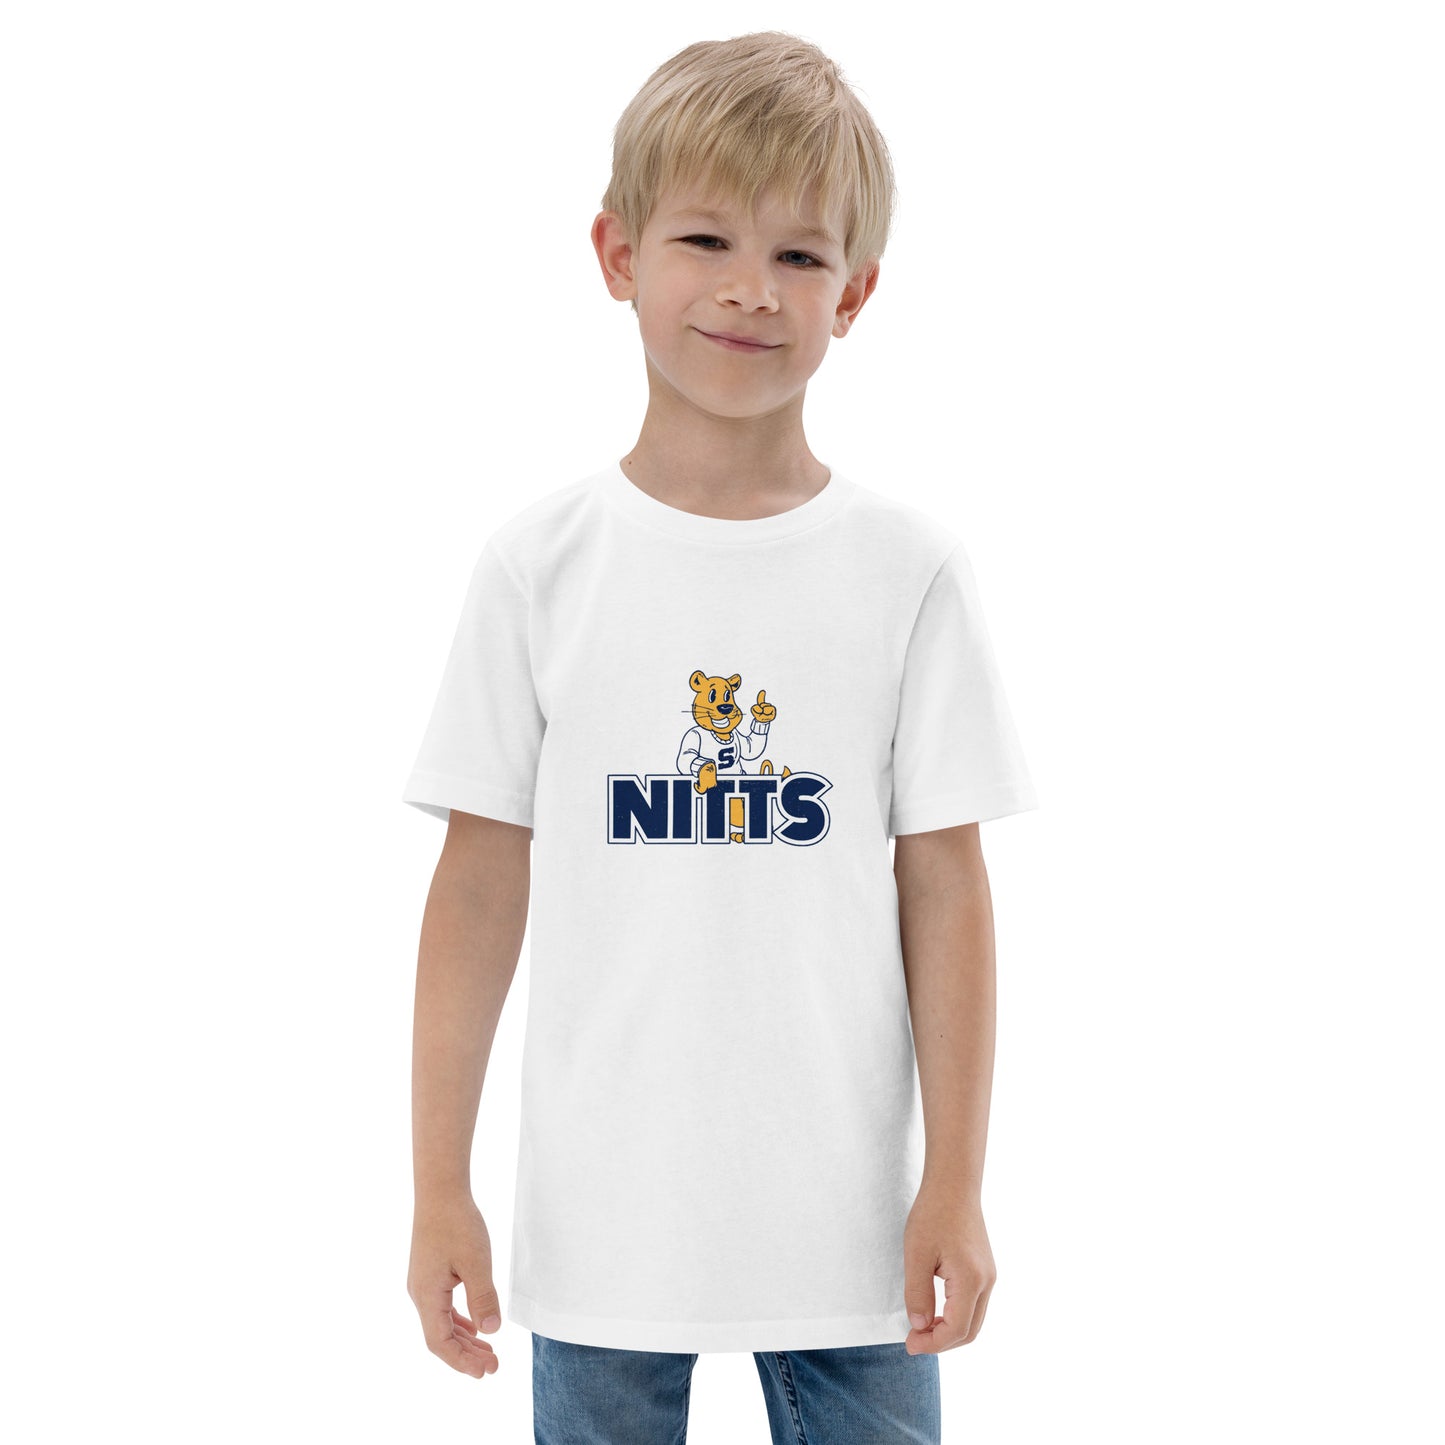 Nitts Mascot youth t-shirt - white